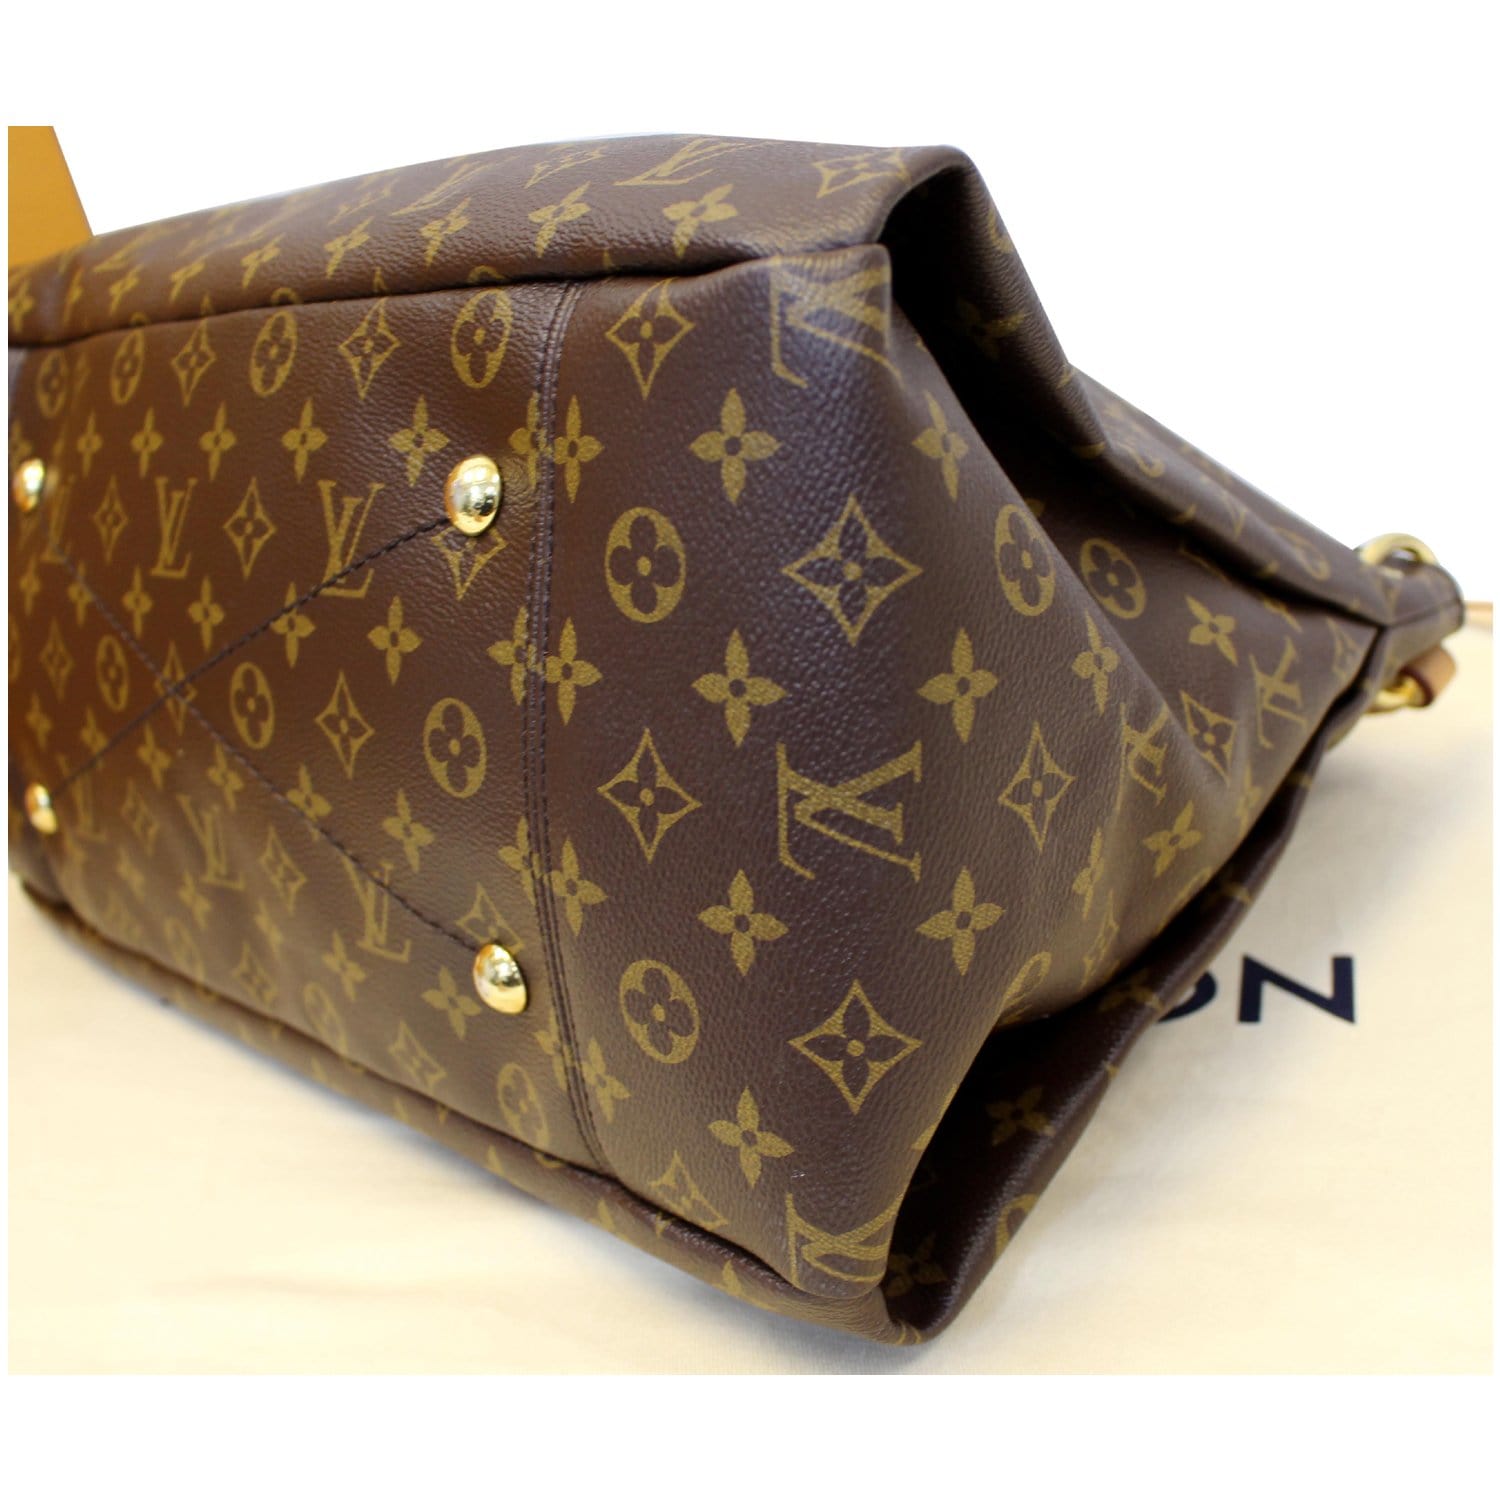 Louis Vuitton Damier Azur Canvas Artsy GM Shoulder Bag ○ Labellov